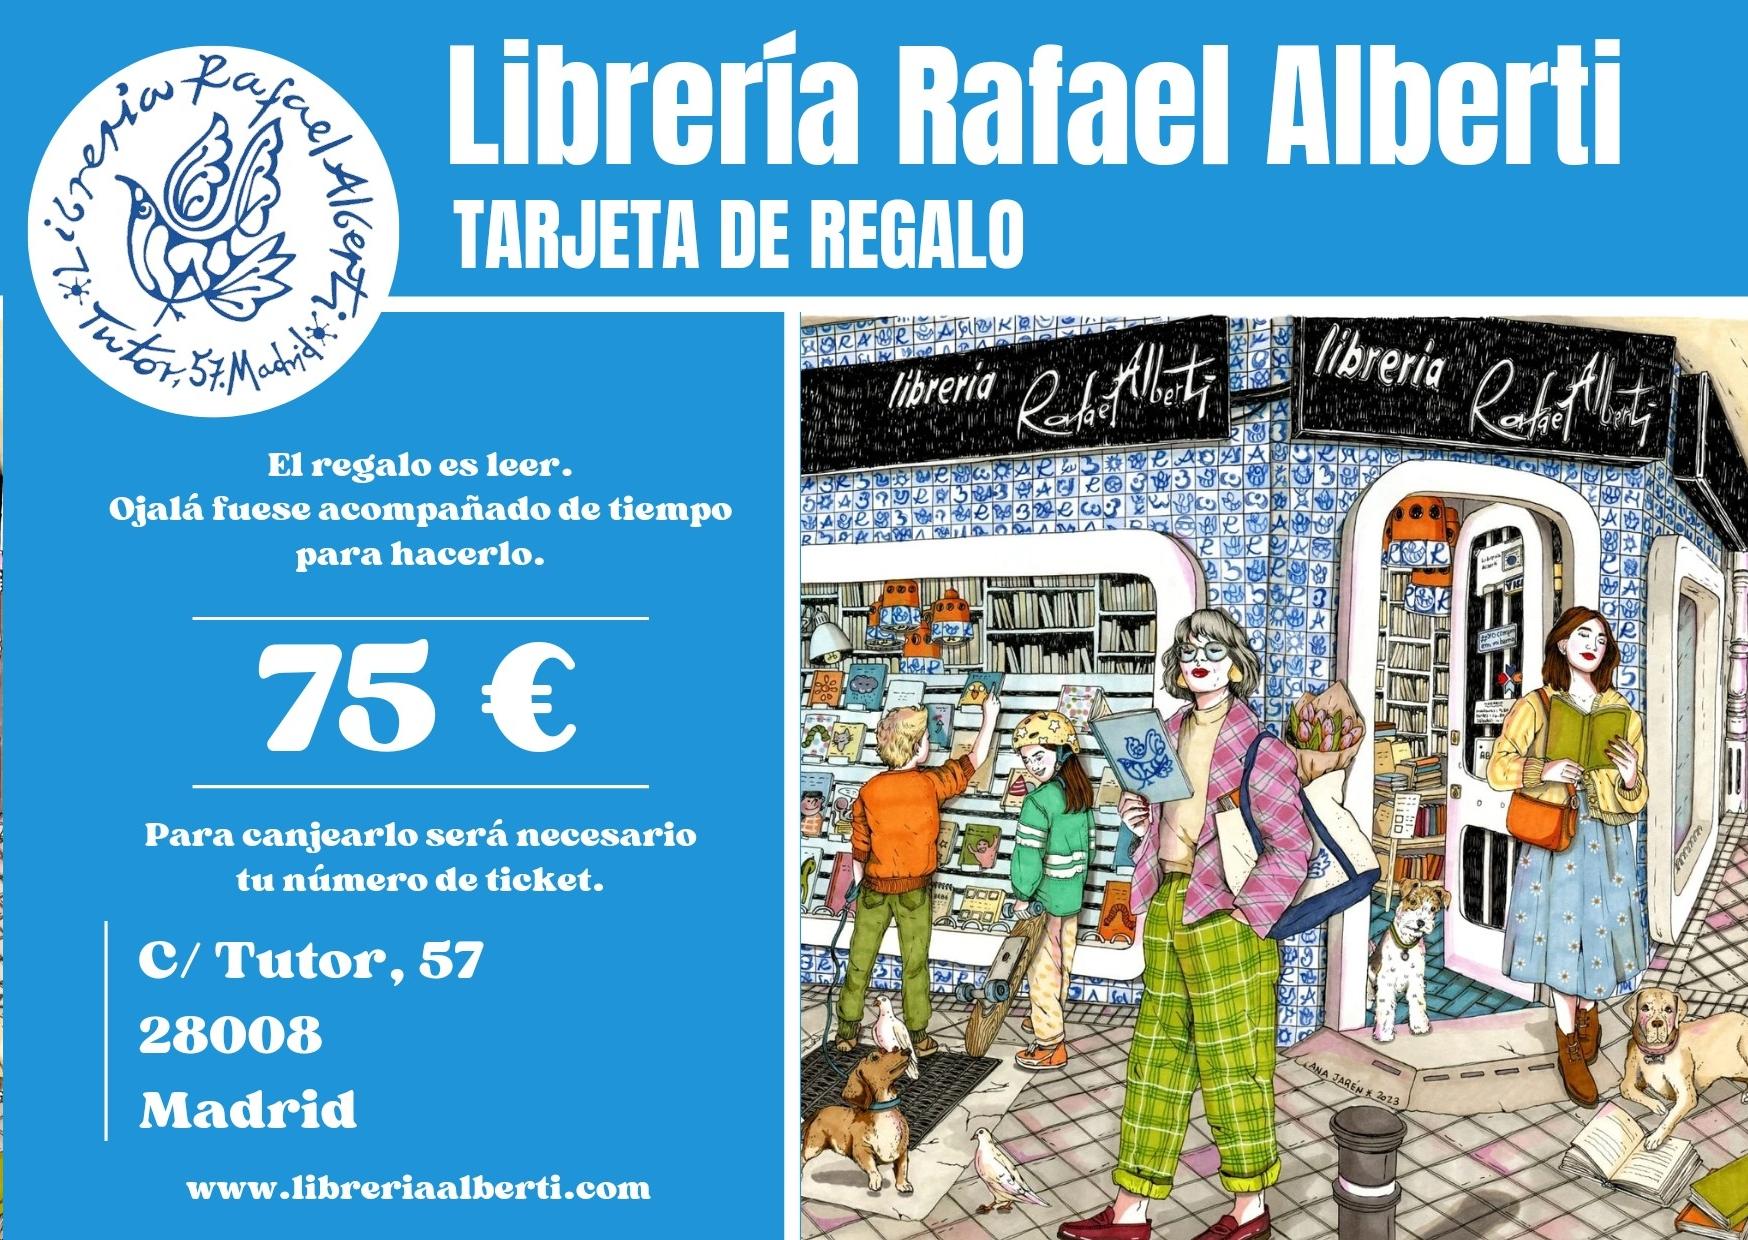 TARJETA REGALO ALBERTI 75 EUROS "El regalo es leer"